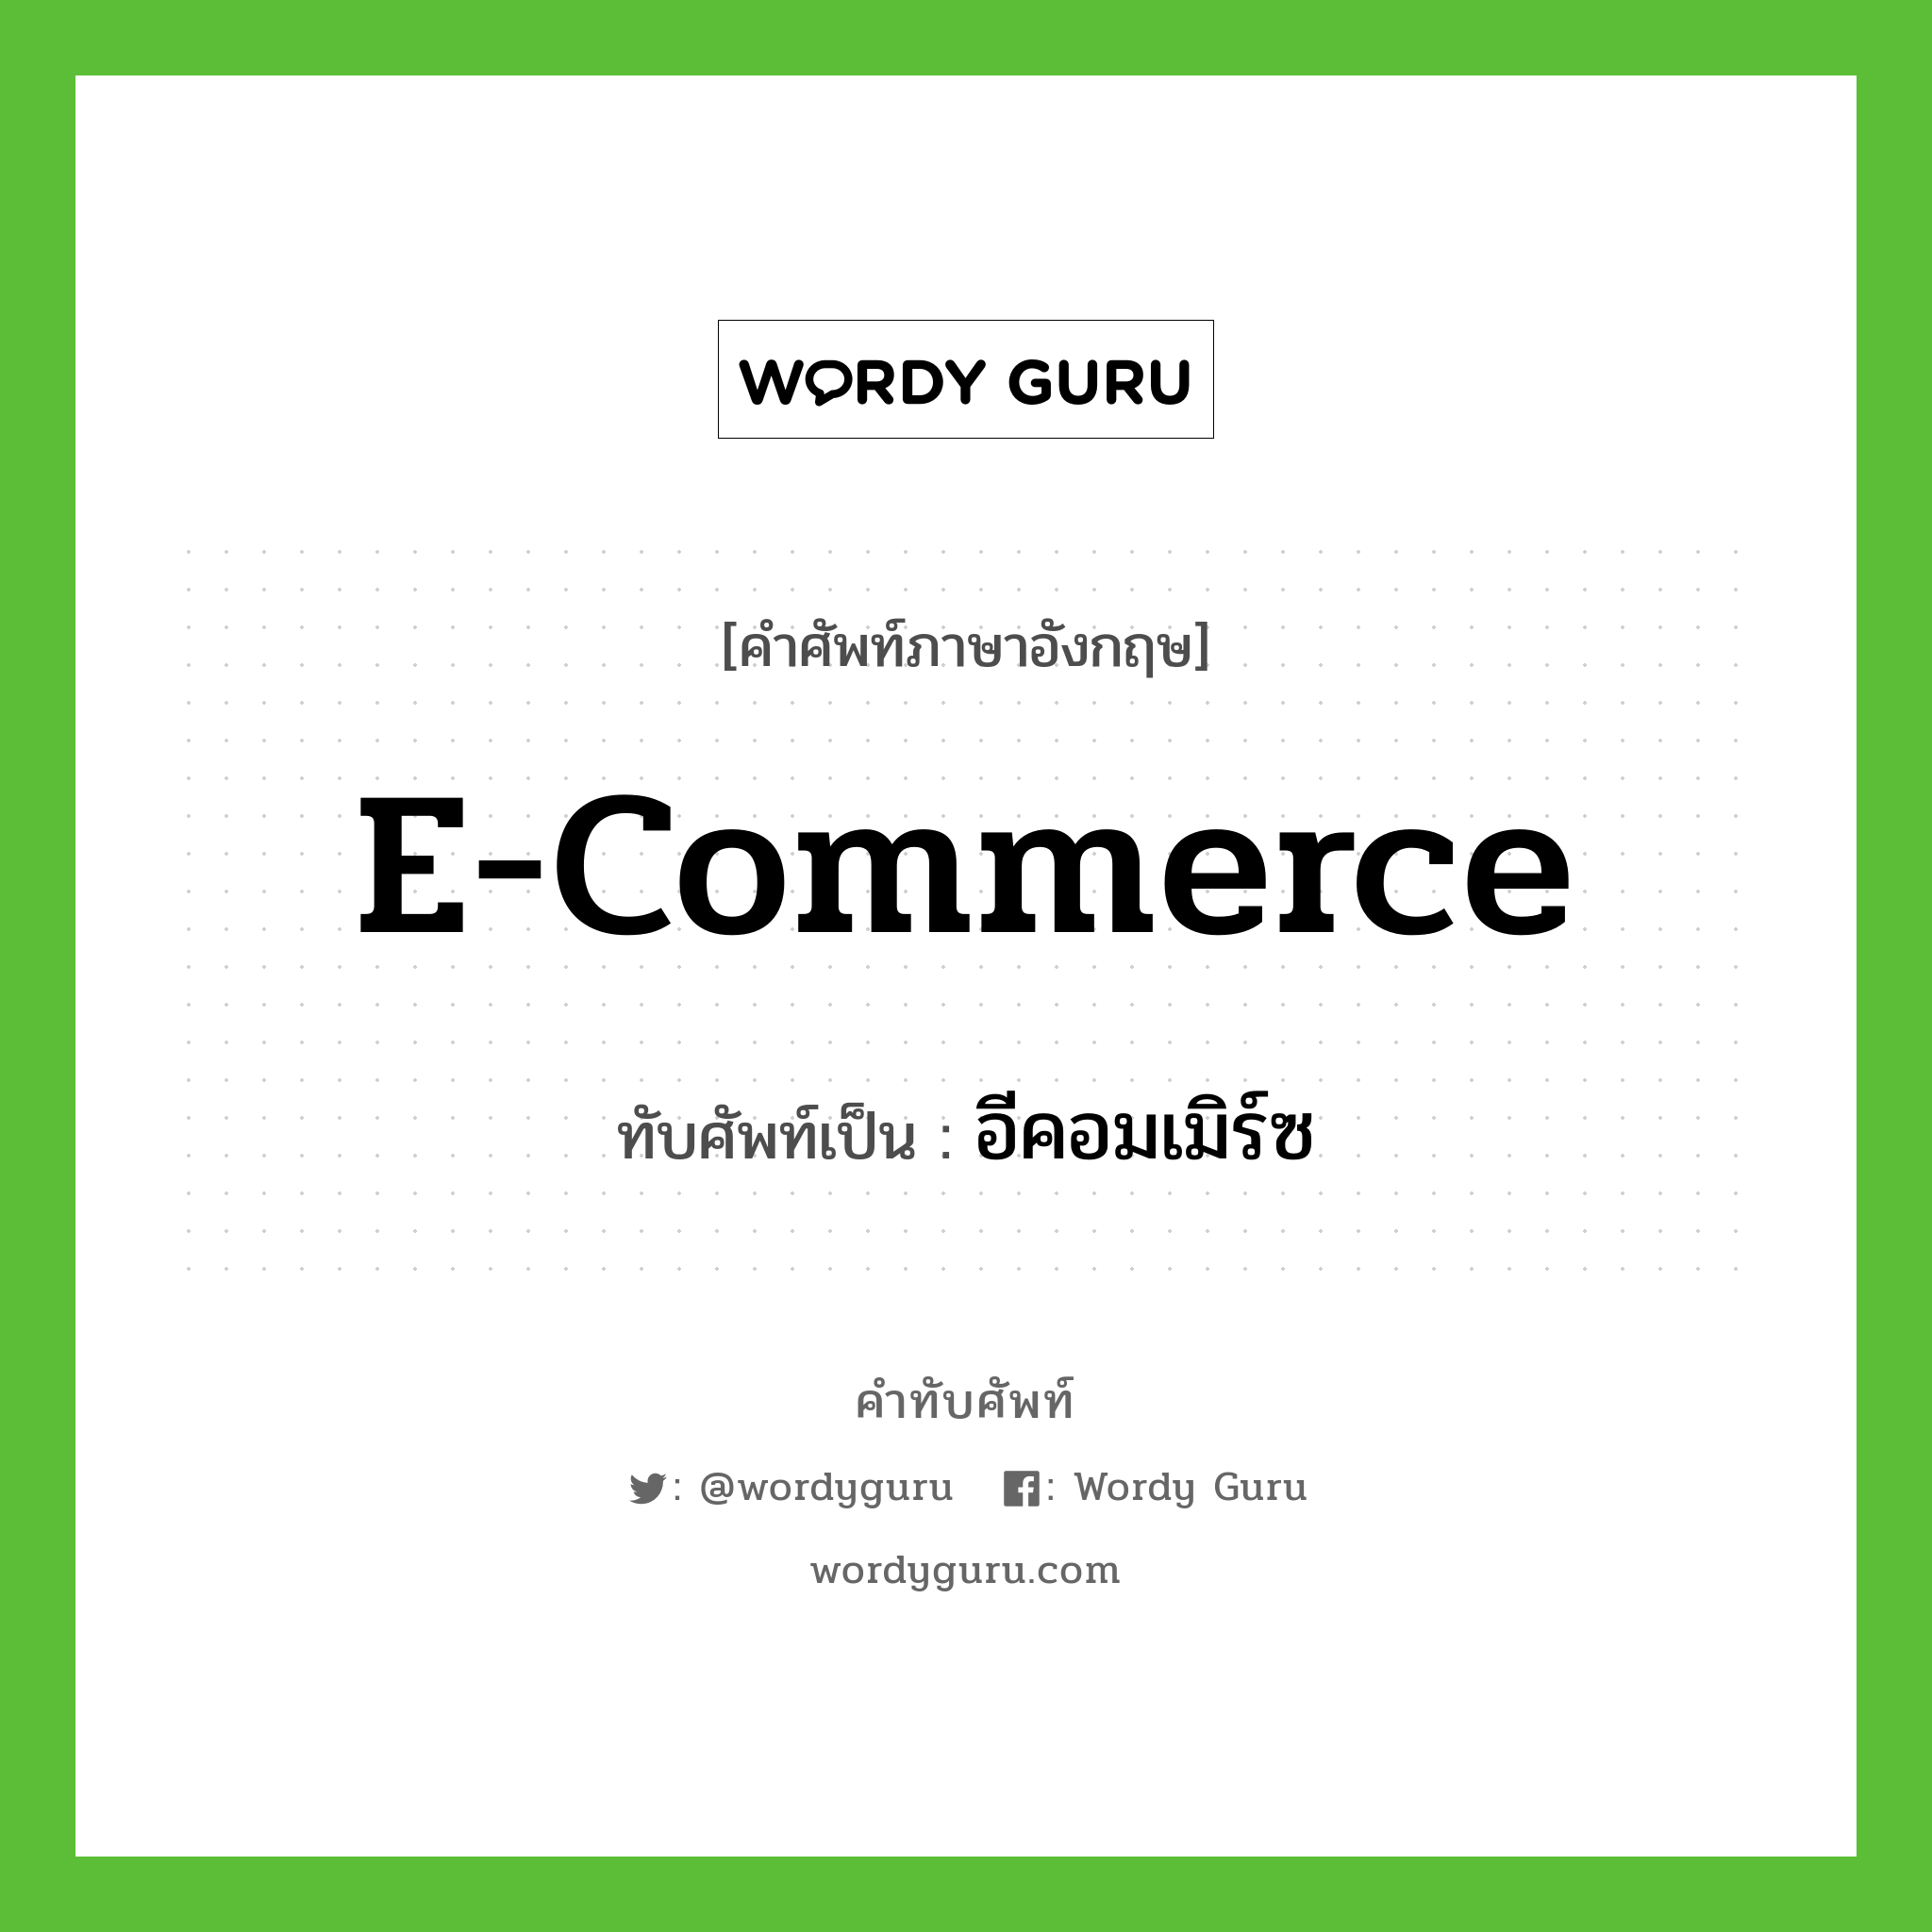 e-commerce เขียนเป็นคำไทยว่าอะไร?, คำศัพท์ภาษาอังกฤษ e-commerce ทับศัพท์เป็น อีคอมเมิร์ซ